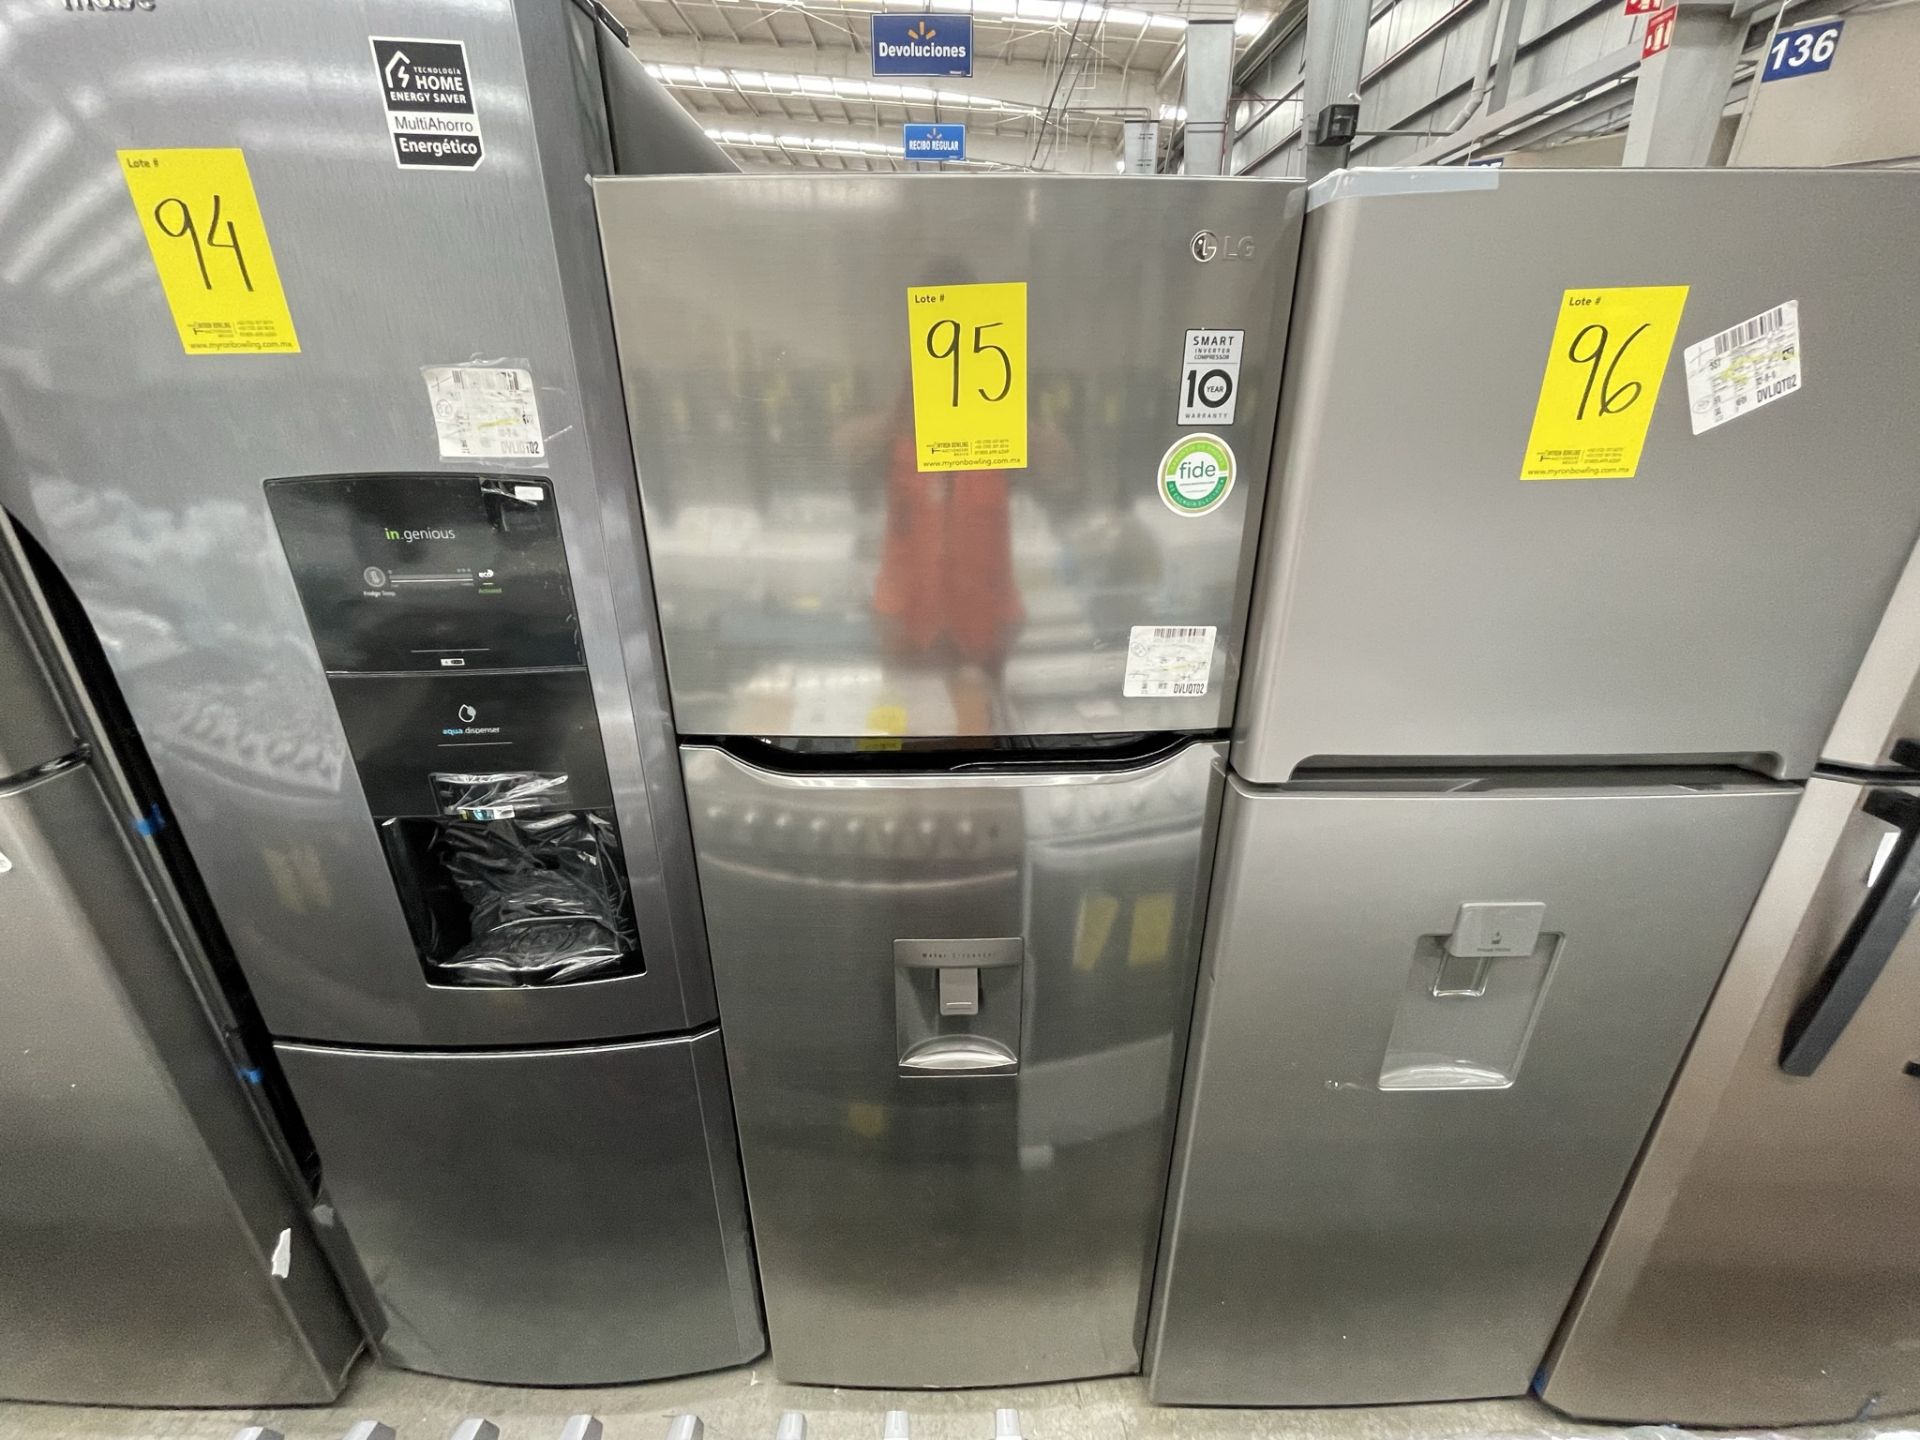 (EQUIPO NUEVO) 1 Refrigerador Con Dispensador De Agua Marca LG, Modelo GT32WDC, Serie X0S114, Color - Image 2 of 9